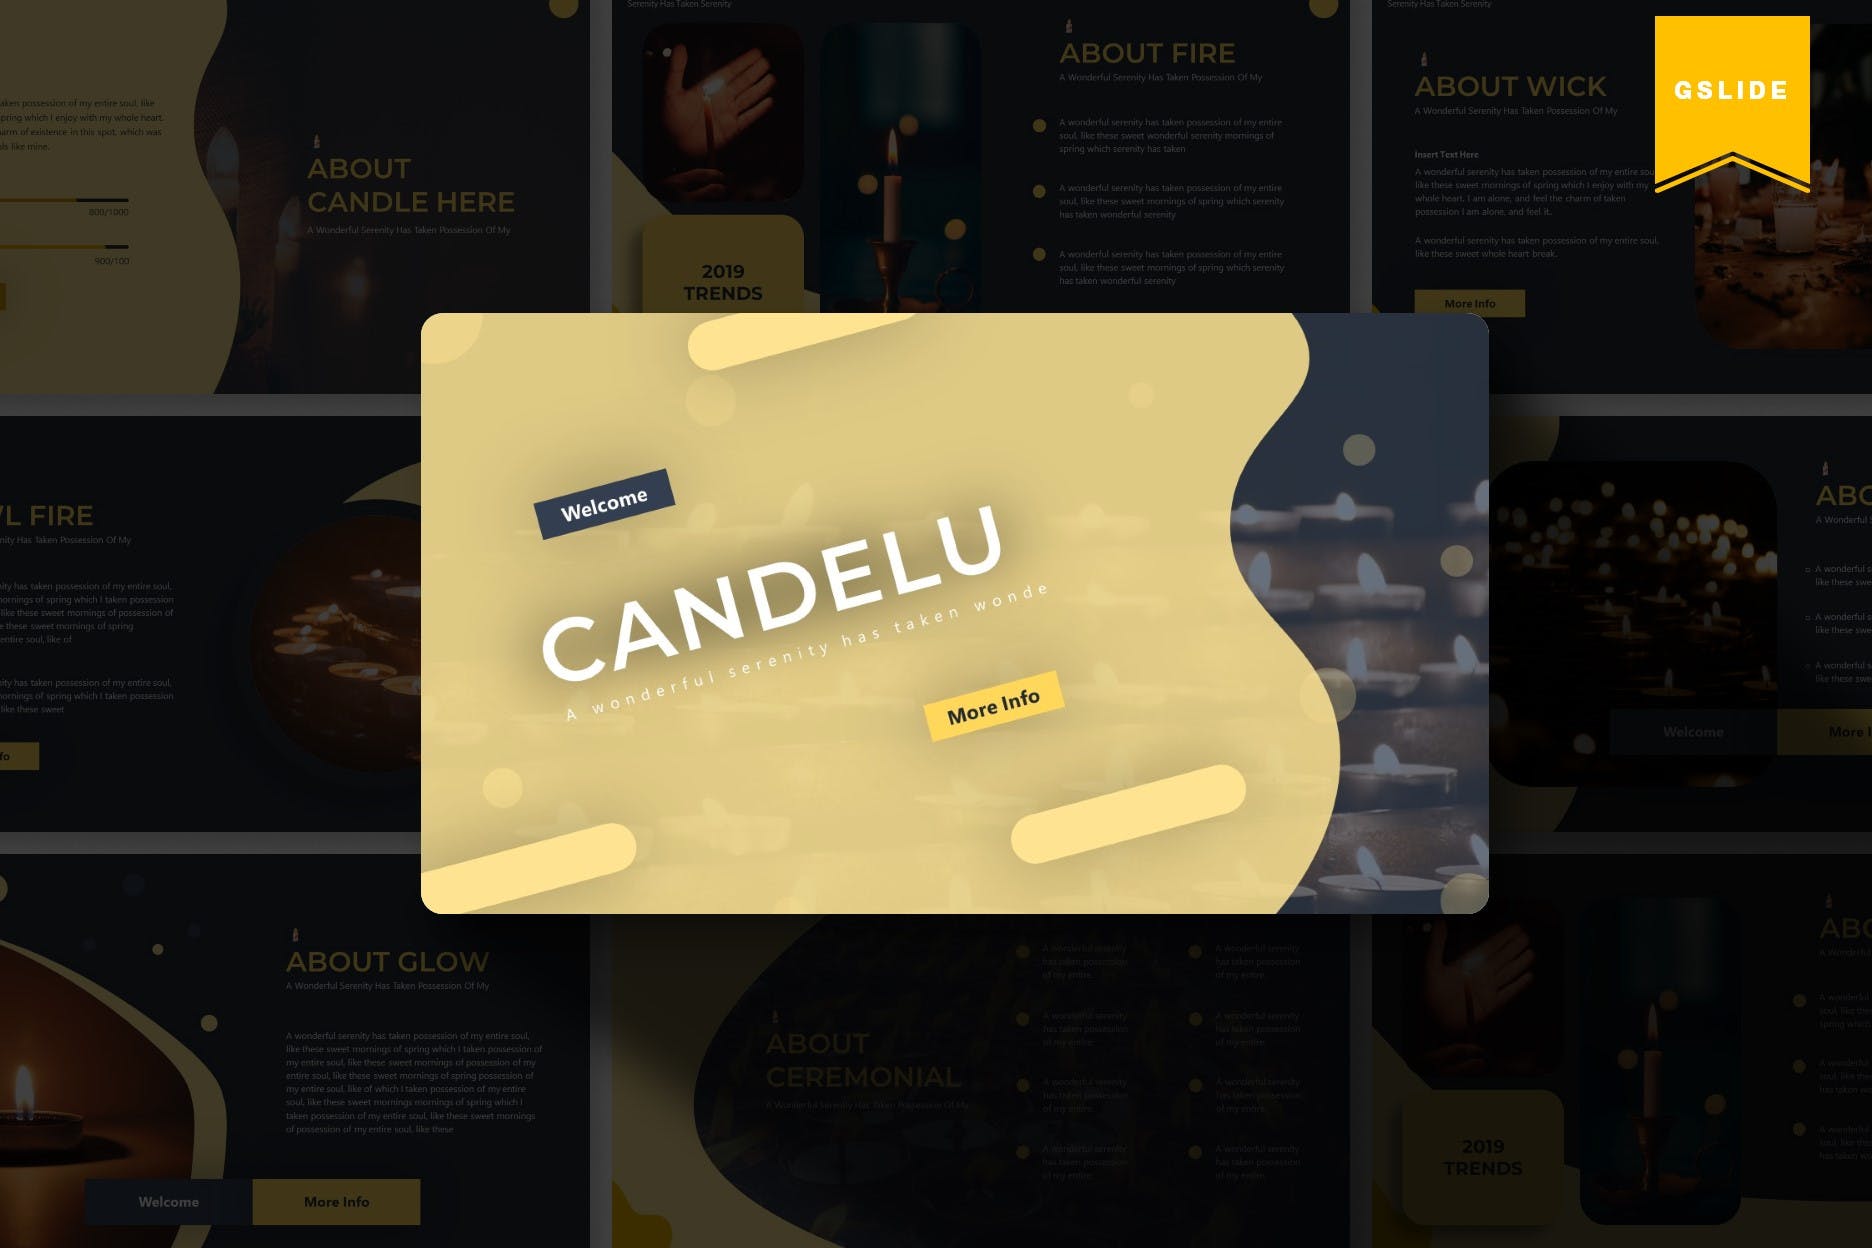 烛光蜡烛元素版式设计蚂蚁素材精选谷歌演示模板 Candelu | Google Slides Template插图